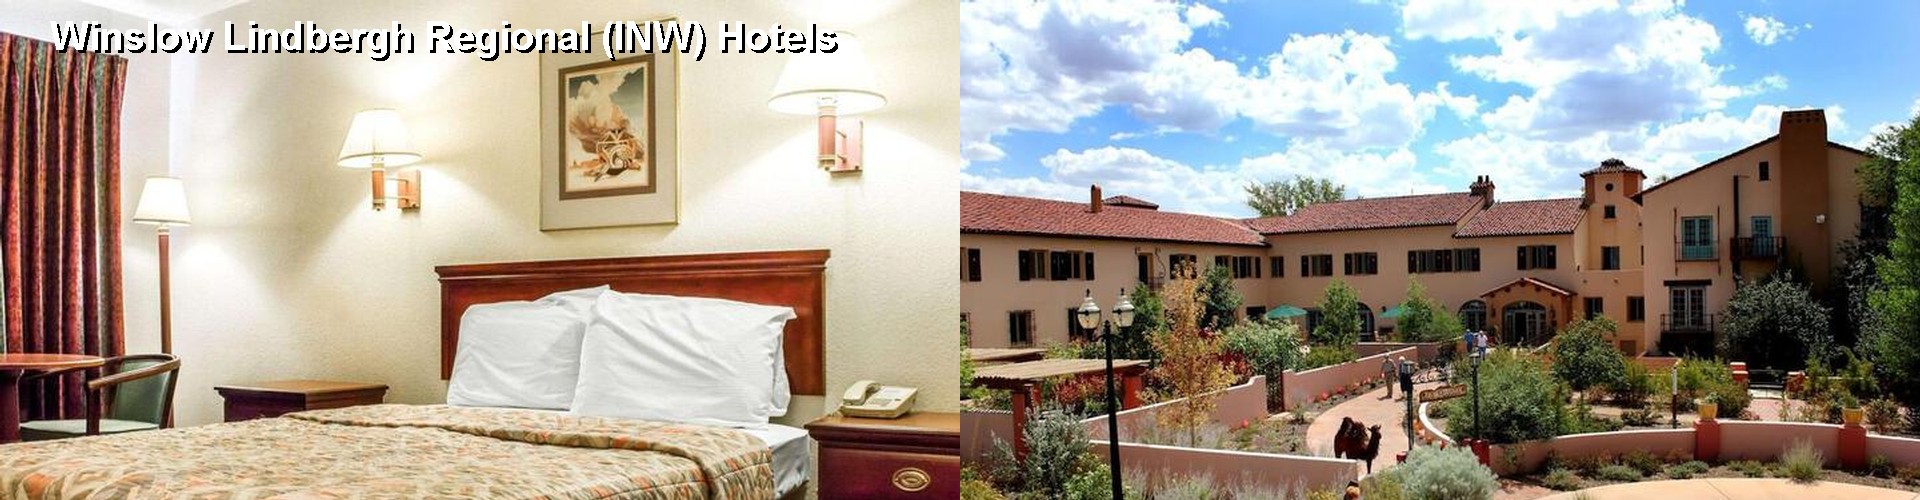 2 Best Hotels near Winslow Lindbergh Regional (INW)